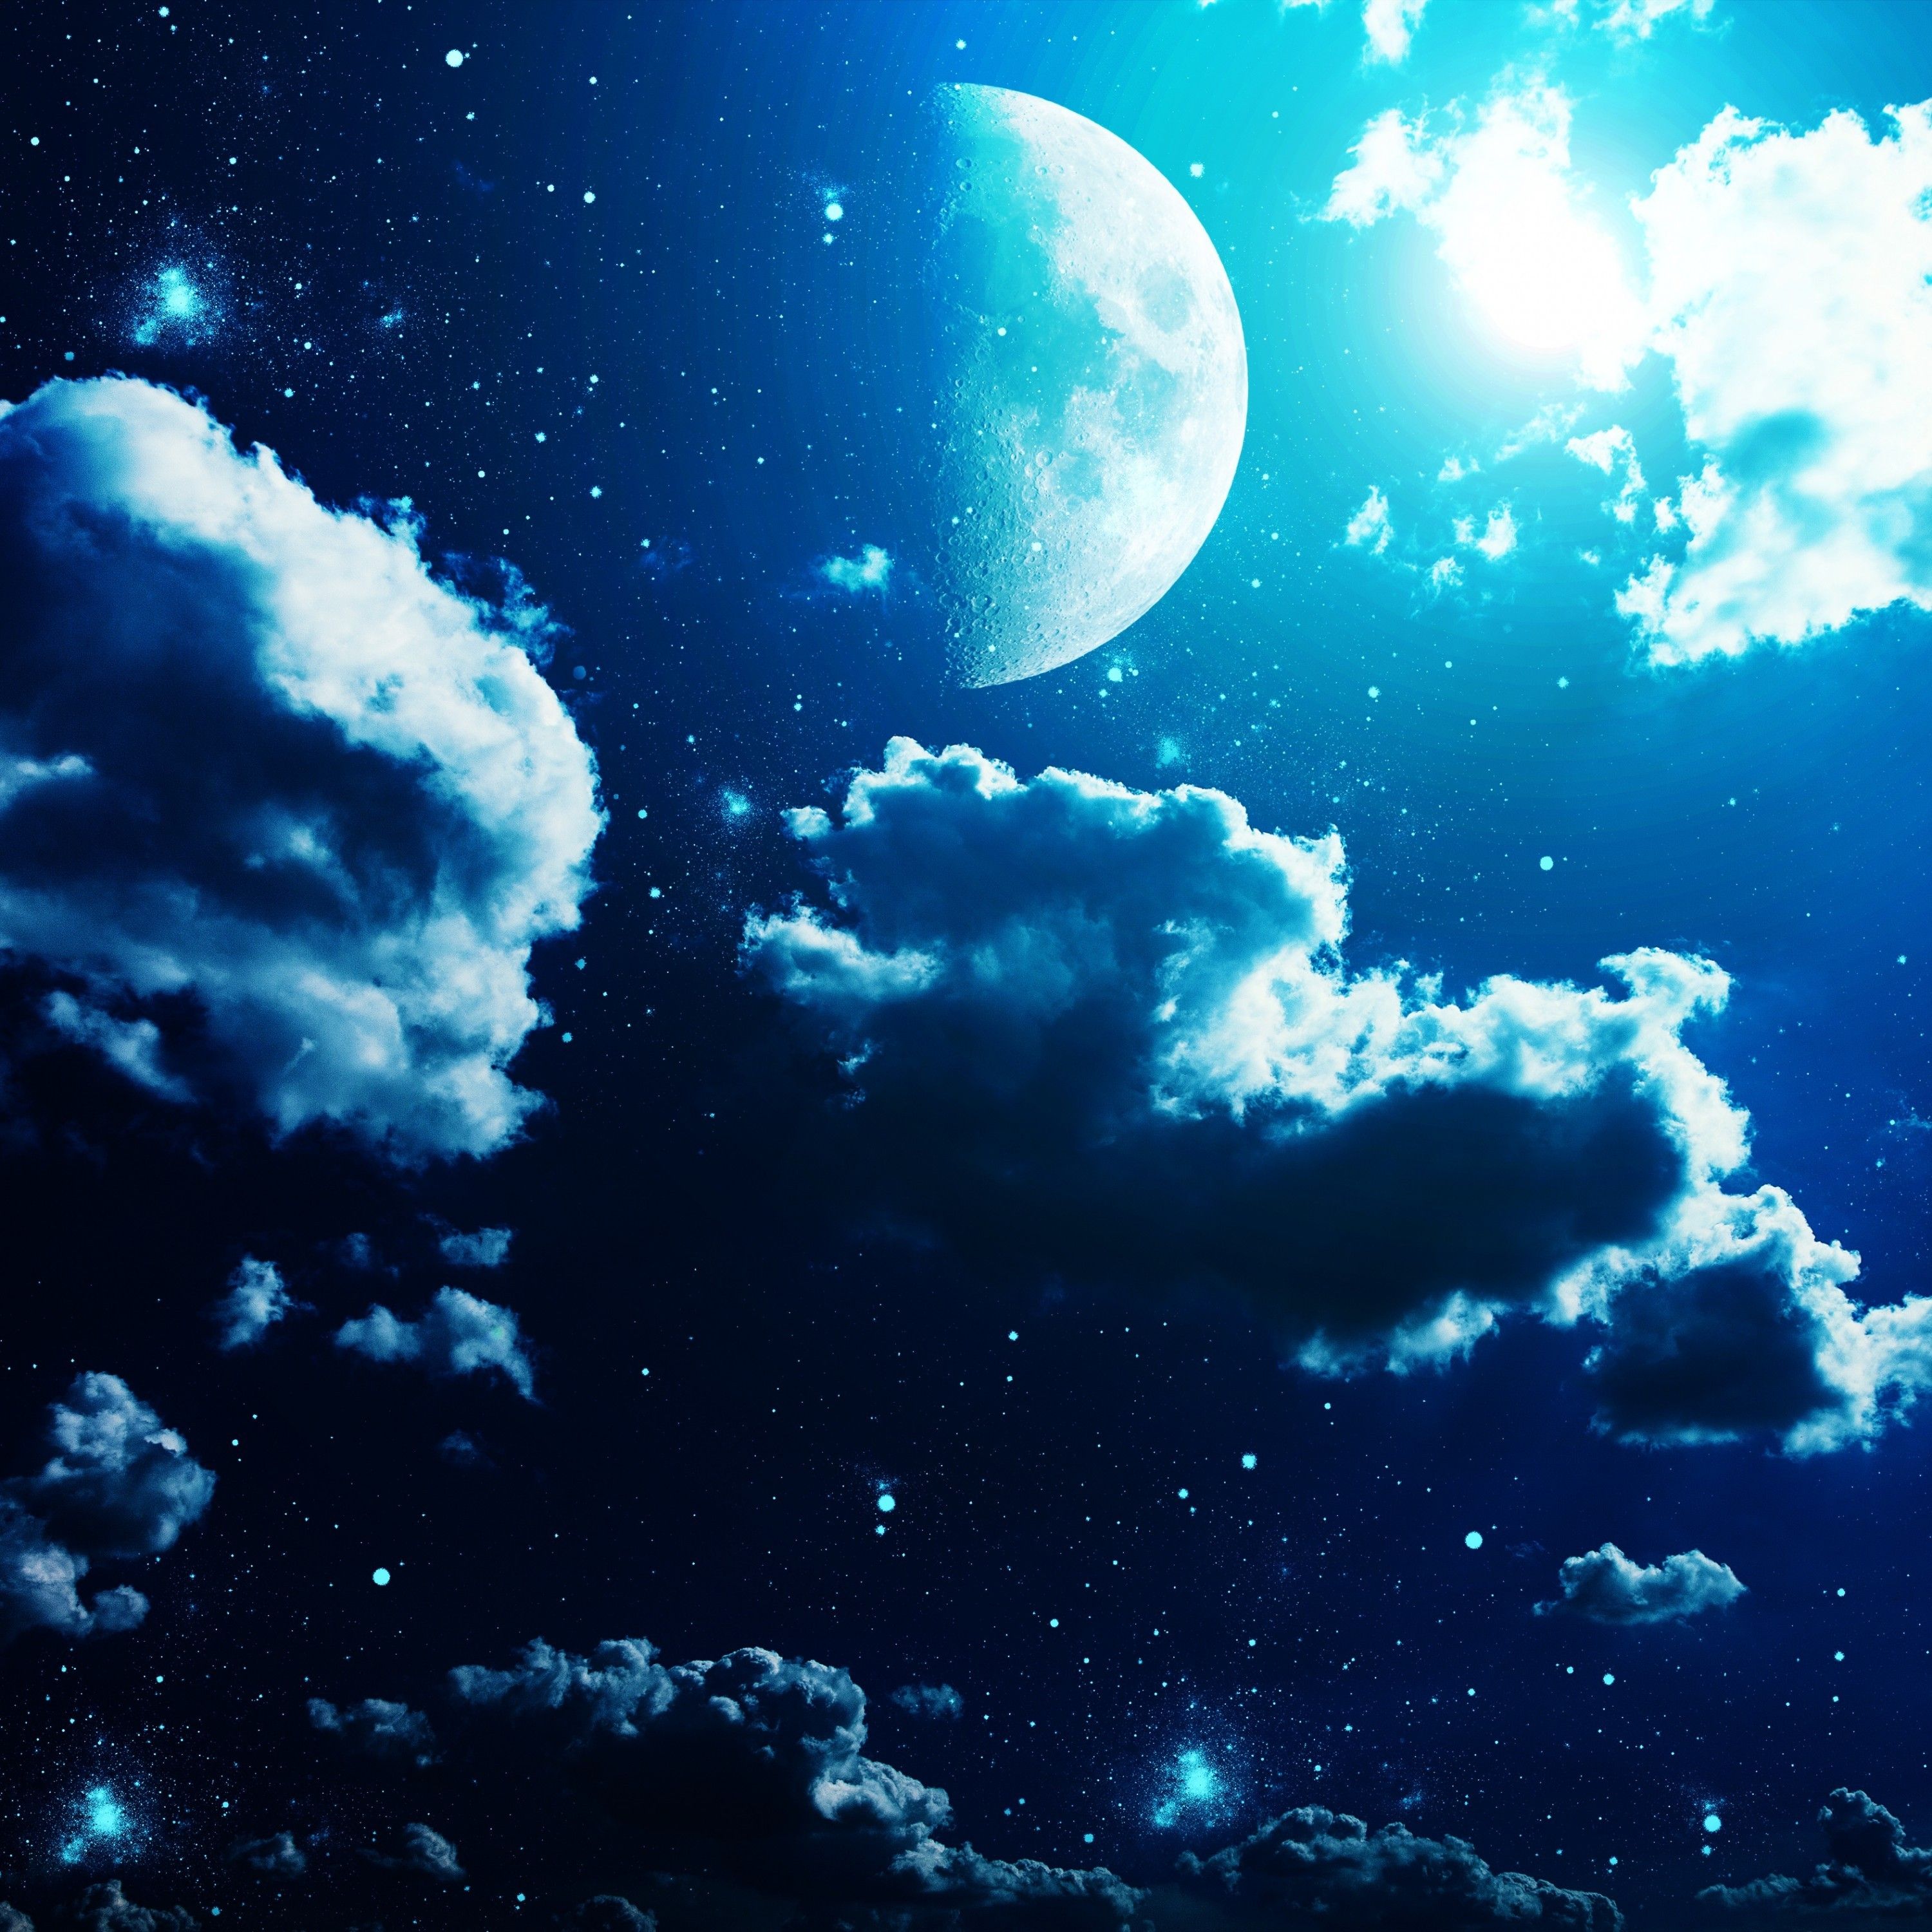 Trăng trong đêm xuống trong ảnh này trông rất tuyệt vời và đẹp. Nếu bạn thích tình khúc nhạc yên bình, hãy xem ảnh này. Bạn sẽ thấy bầu trời với ánh trăng rực rỡ bạn sẽ tìm thấy sự yên tĩnh và tình yêu.